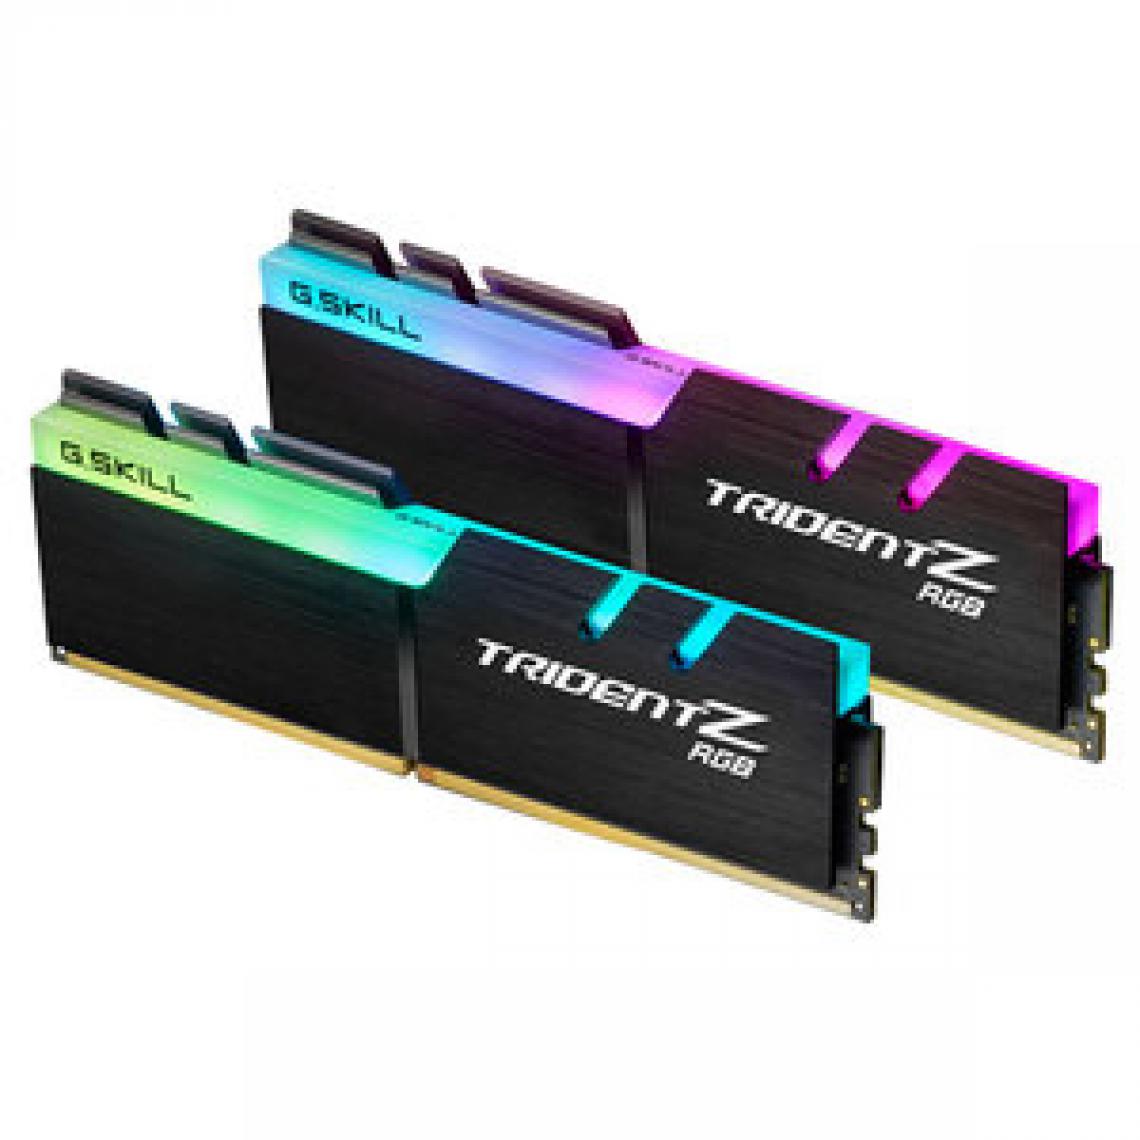 Gskill - Trident Z RGB 16 Go (2x 8 Go) DDR4 3000 MHz CL16 - RAM PC Fixe